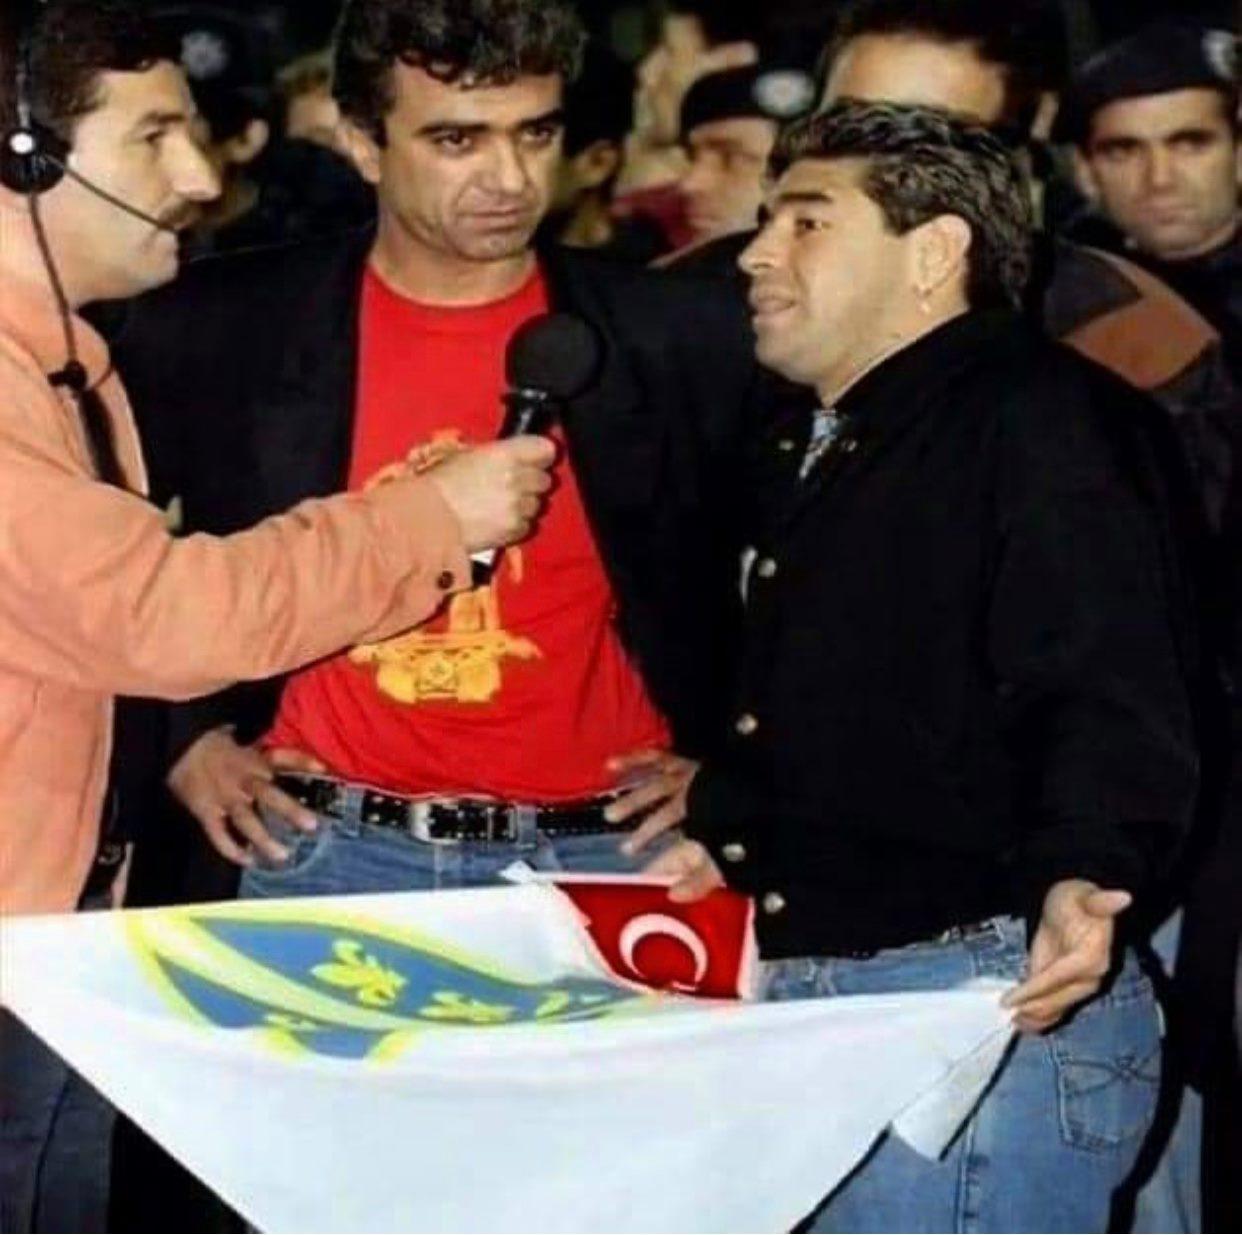 Pogledajte sliku na kojoj Maradona drži zastavu sa ljiljanima